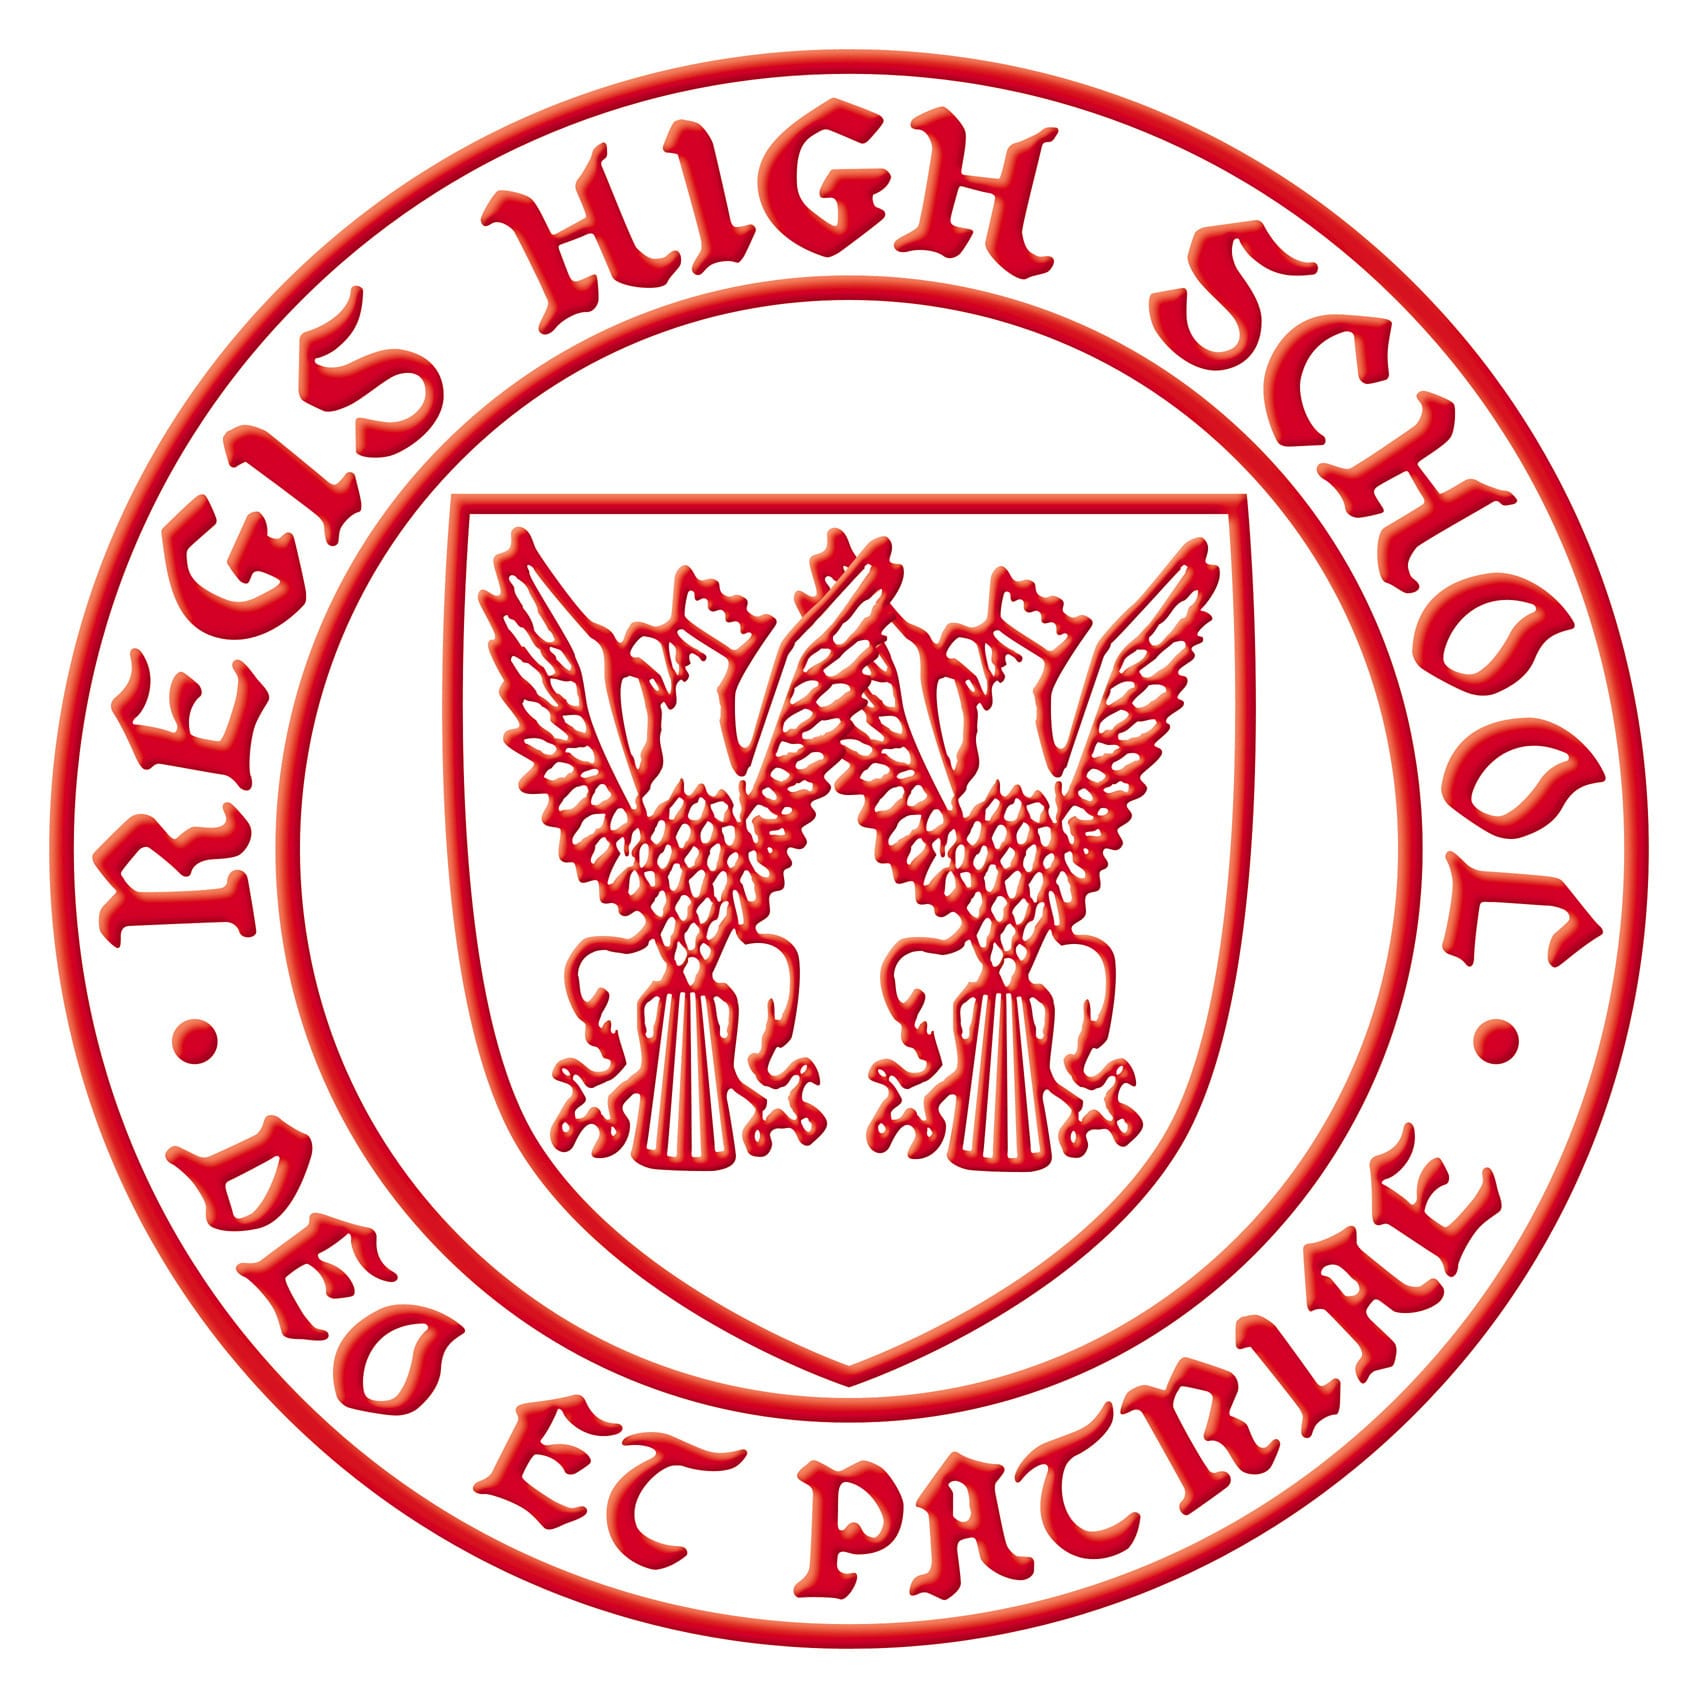 Regis High School Jesuit Schools Network